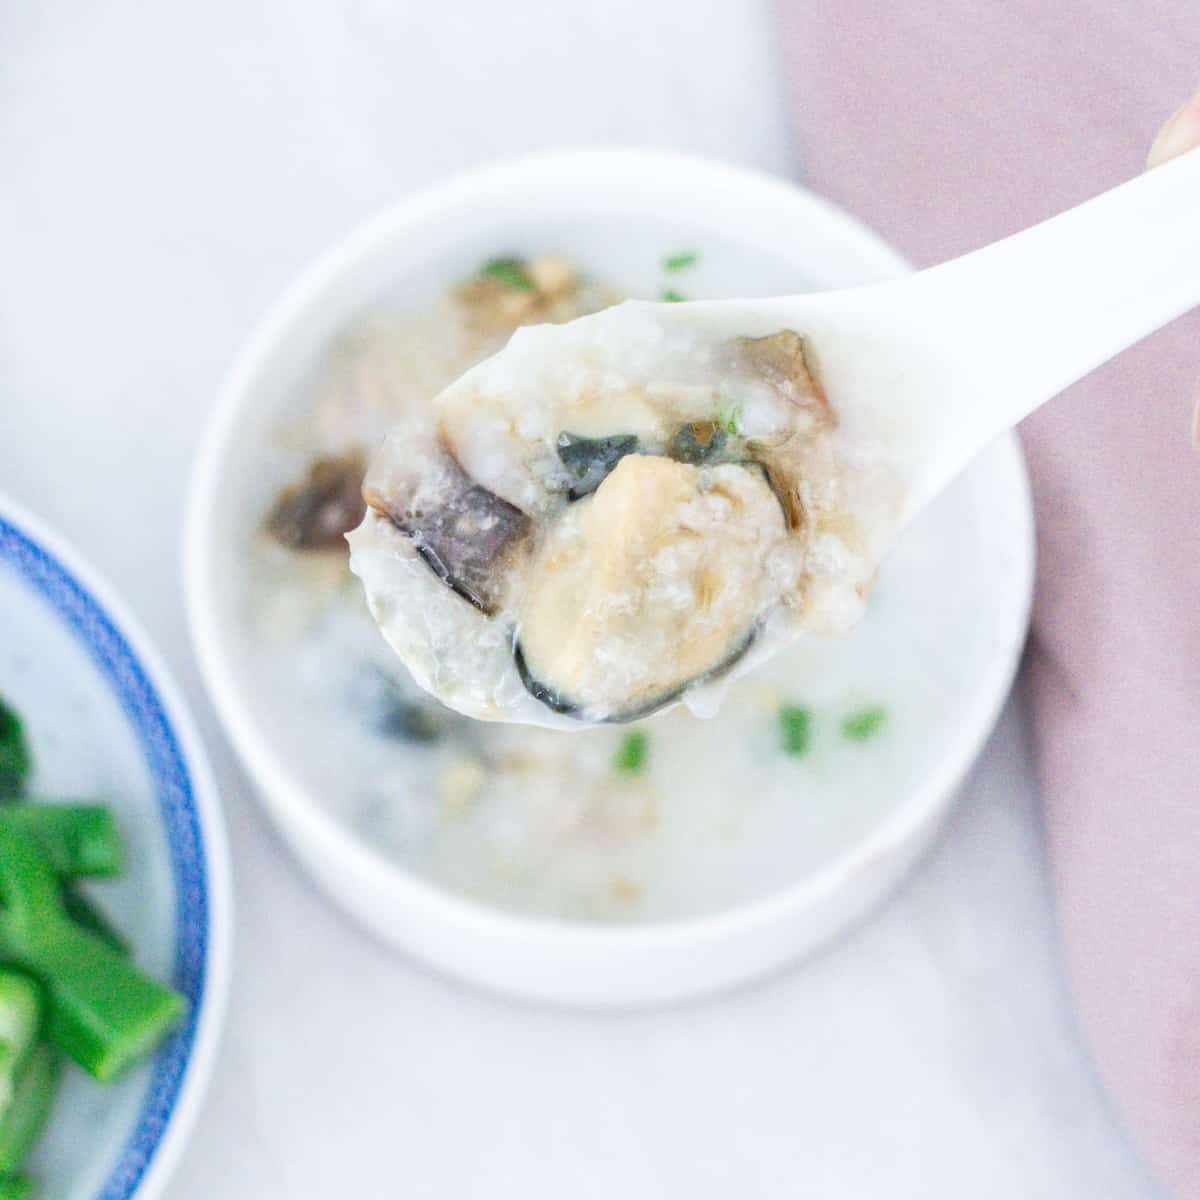 皮蛋瘦肉粥 Instant Pot Salted Pork and Century Egg Congee Recipe